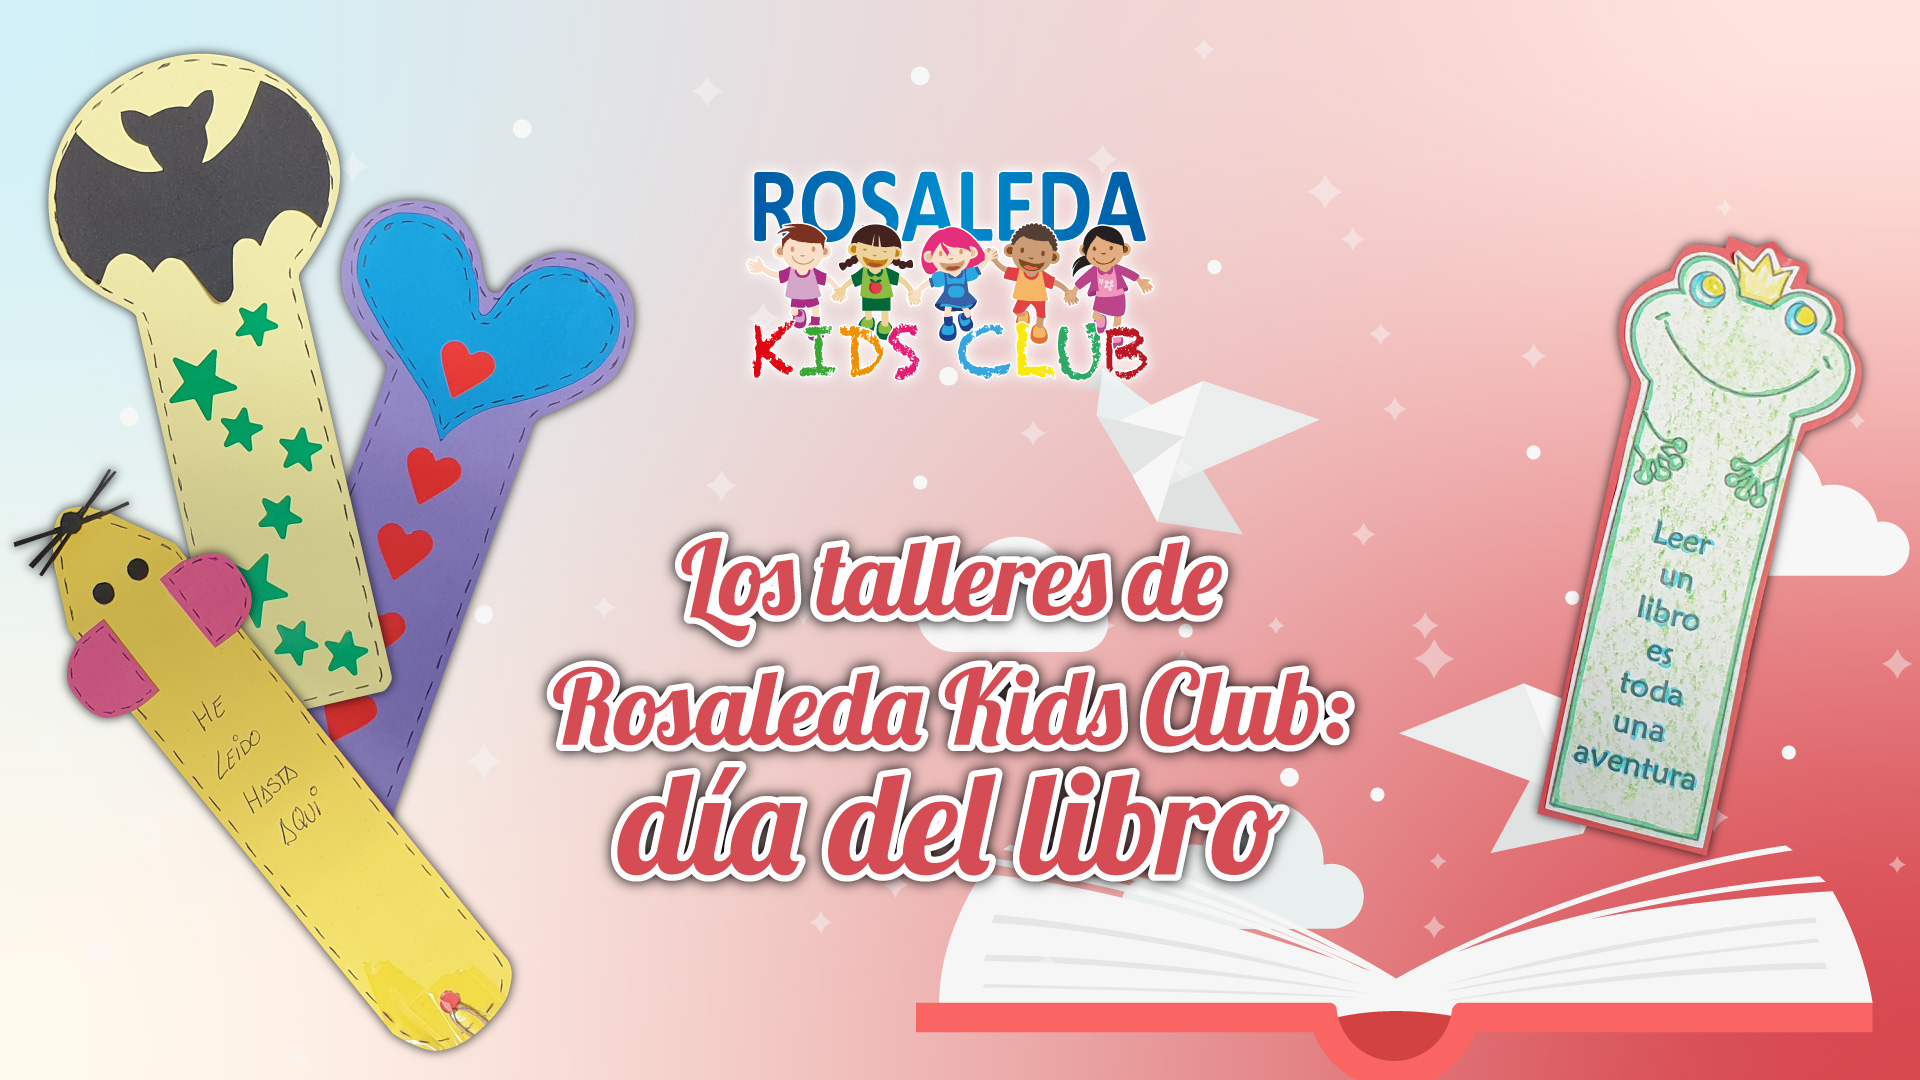 Los talleres de Rosaleda Kids Club: Día del Libro